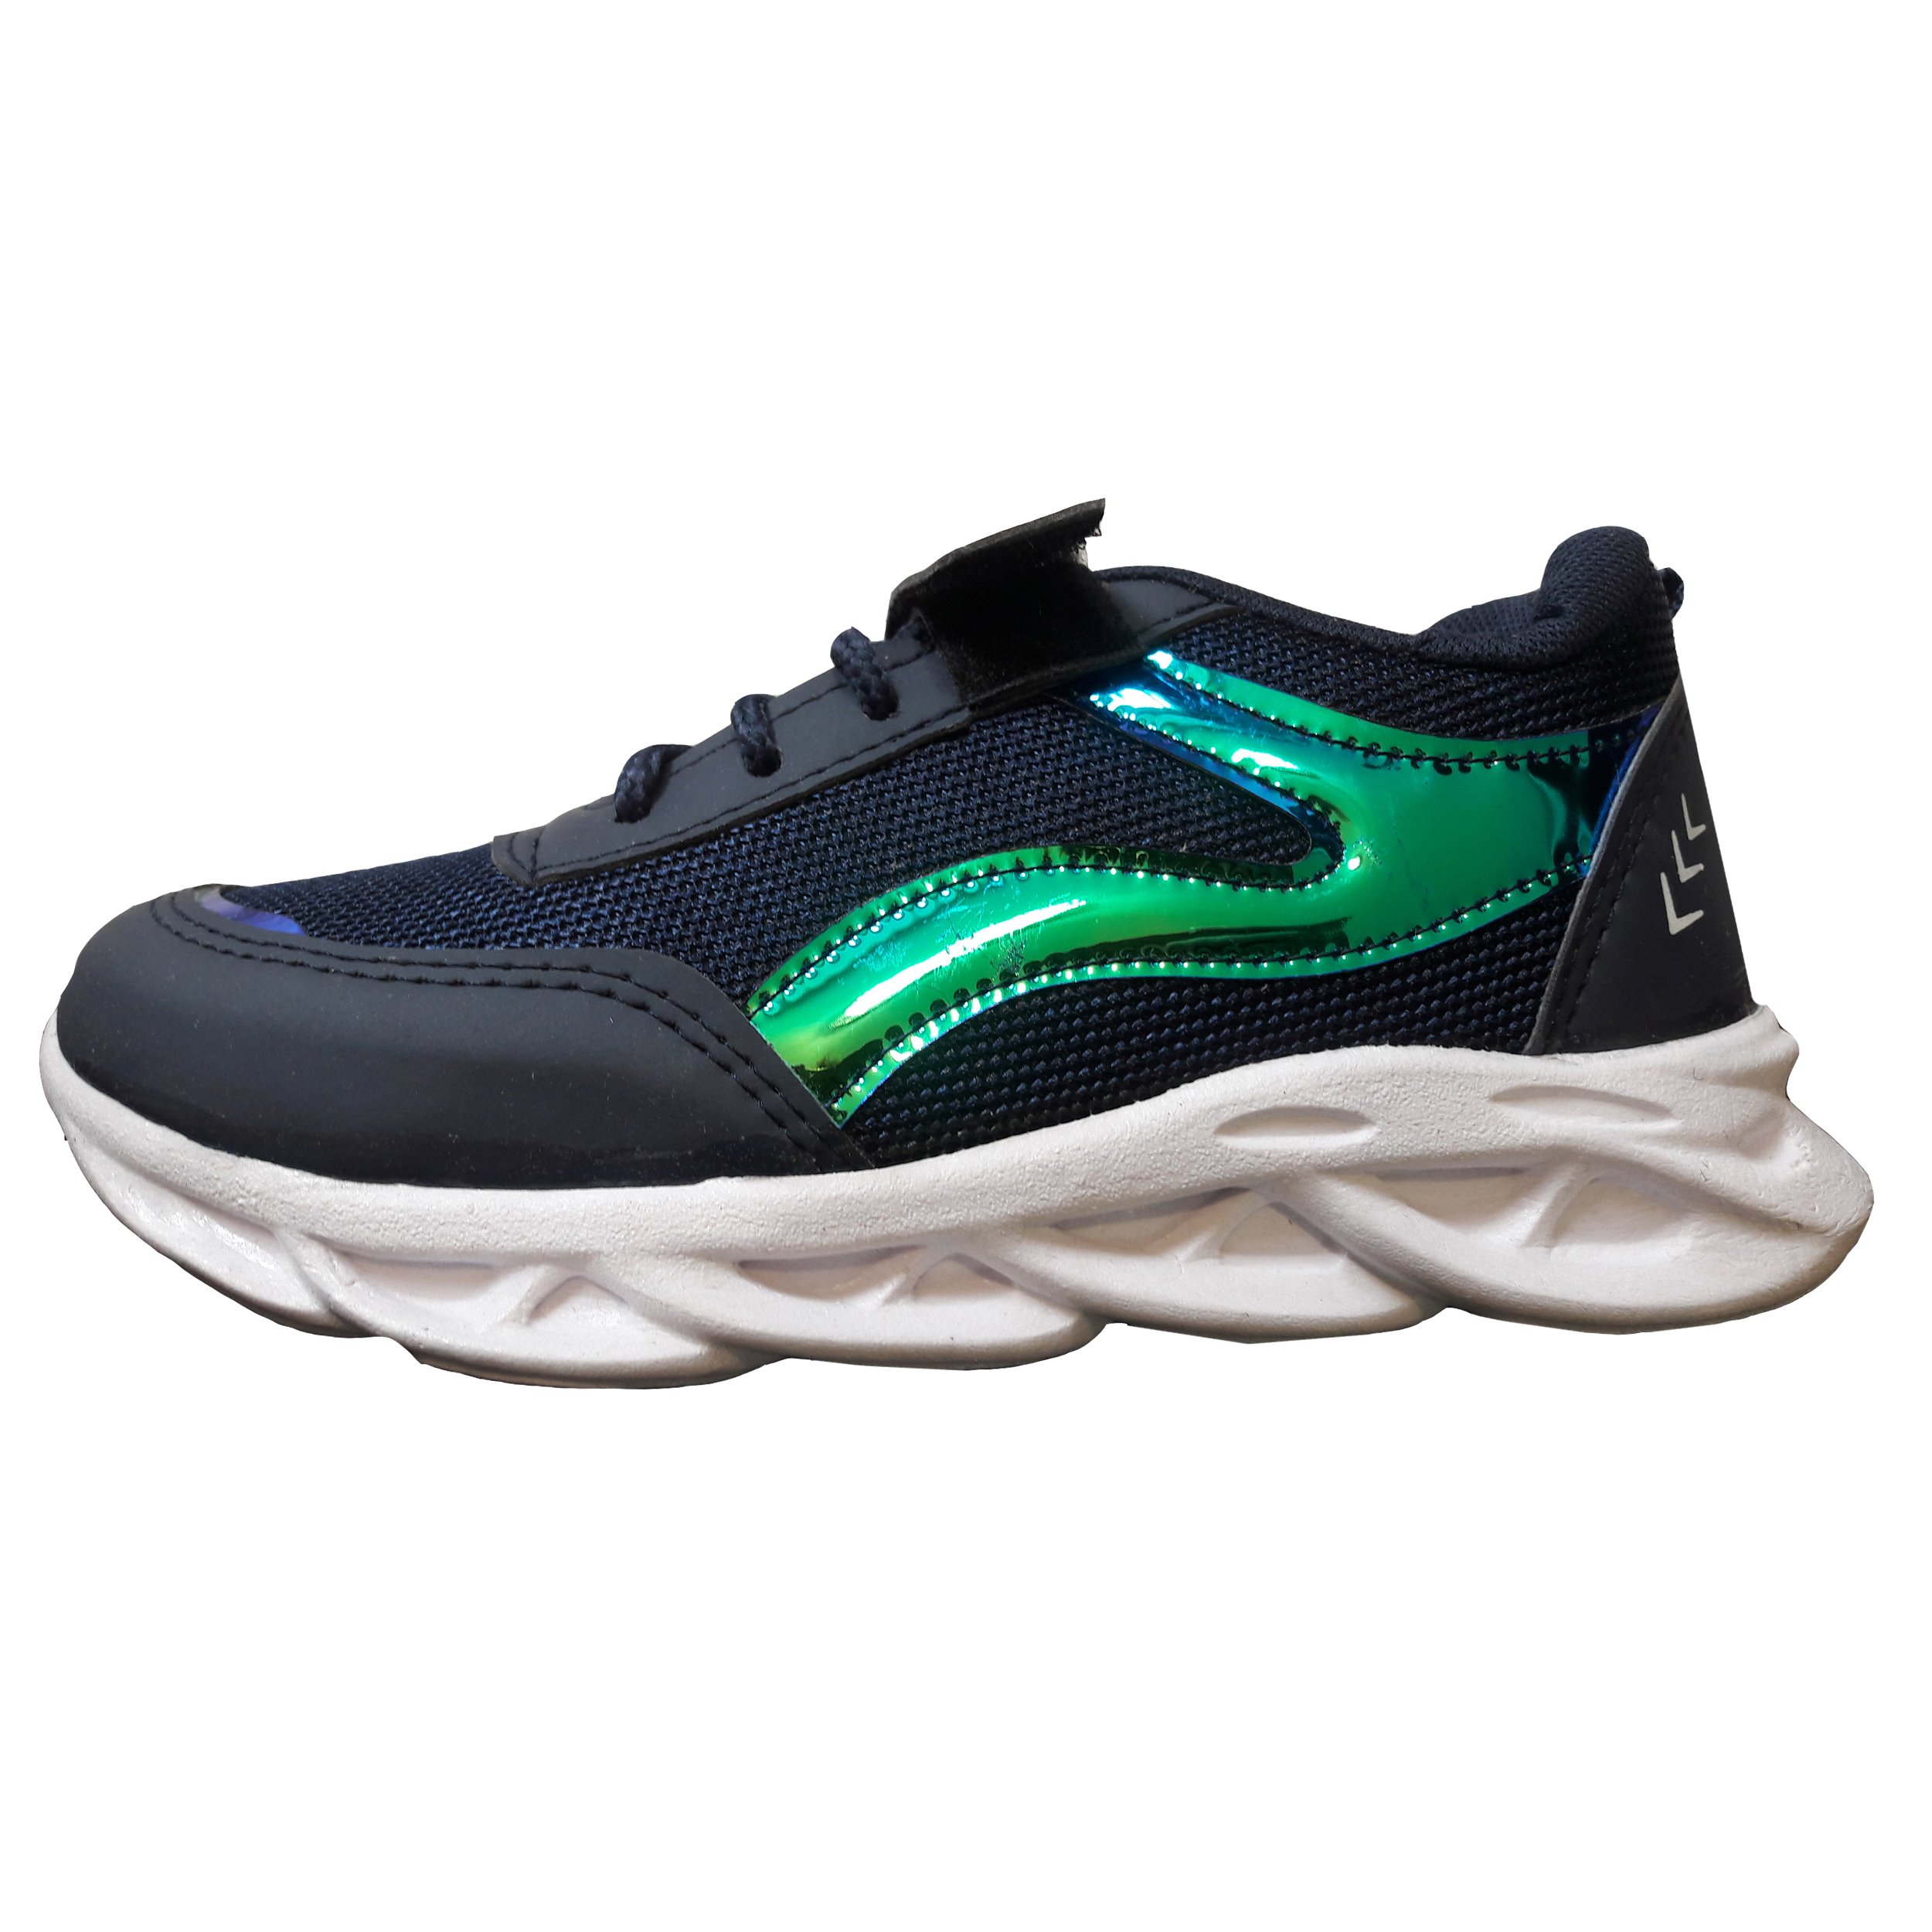 کفش مخصوص پیاده روی مدل آلفا کد BLU